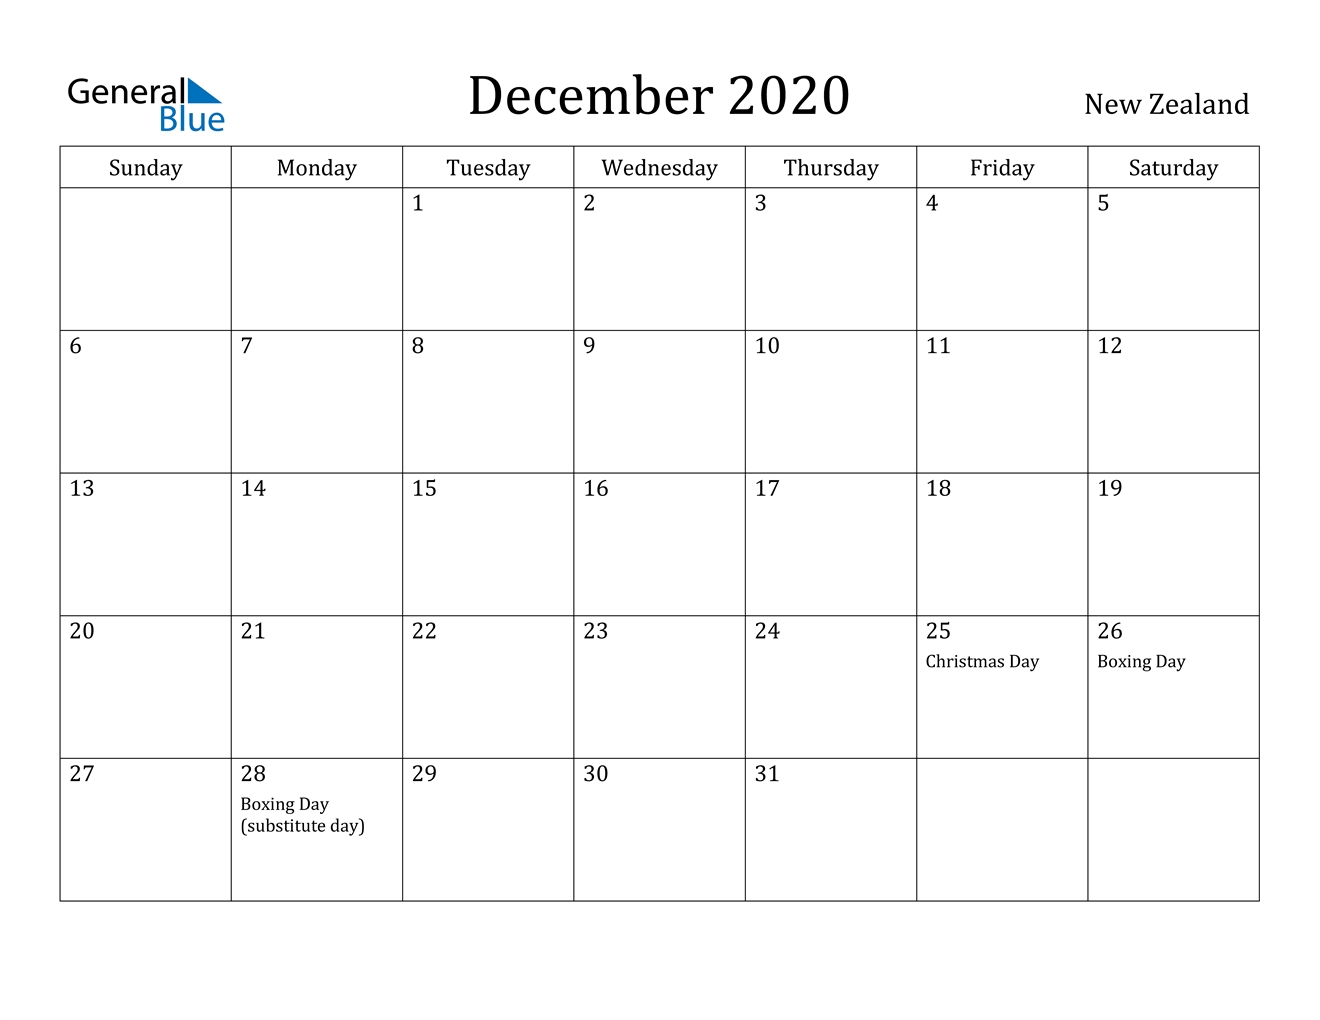 December 2020 Calendar - New Zealand